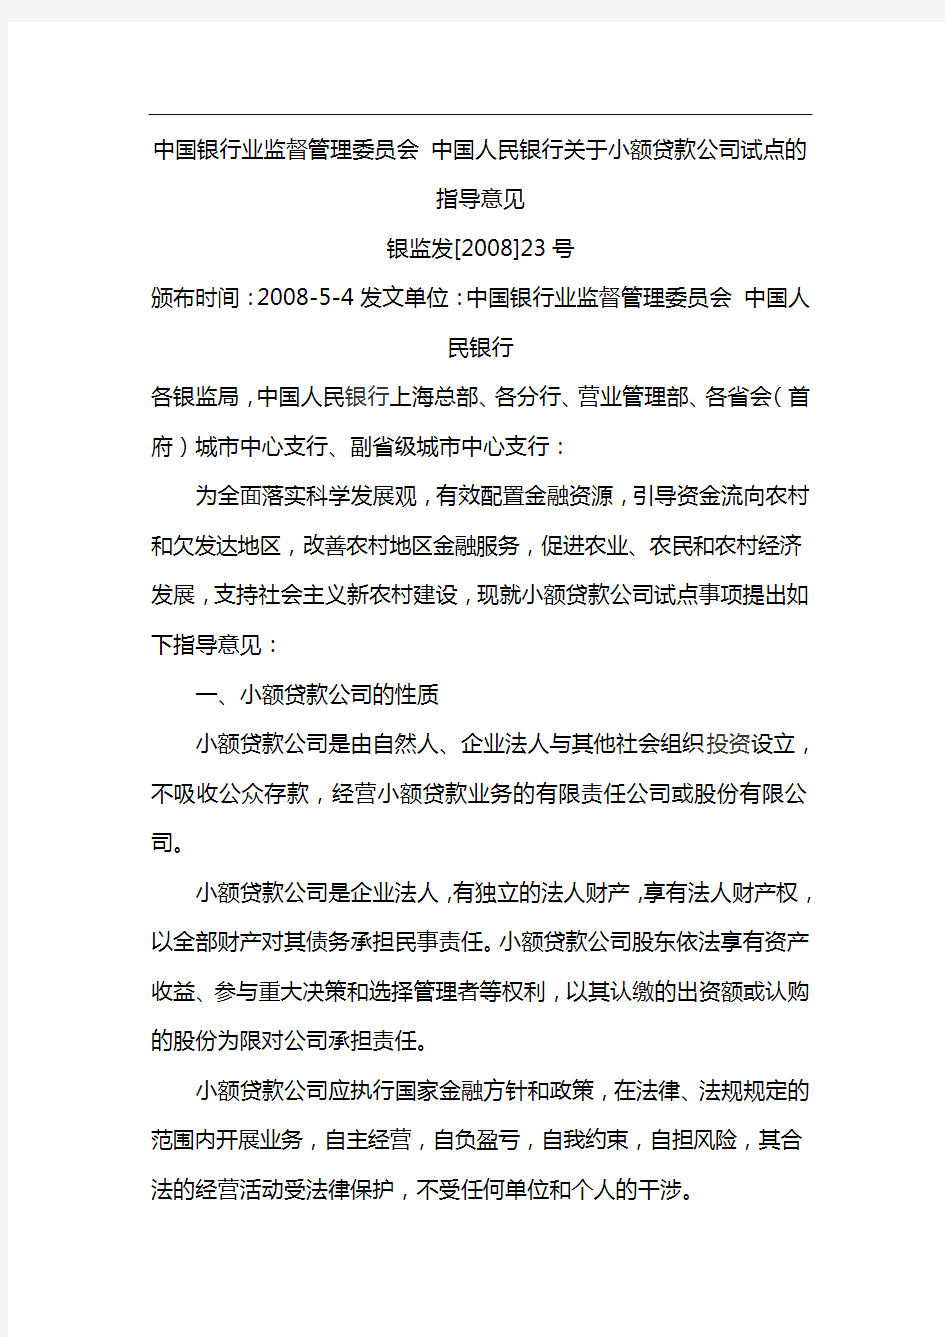 中国人民银行监督管理委员会、中国人民银行关于小额贷款公司的指导意见